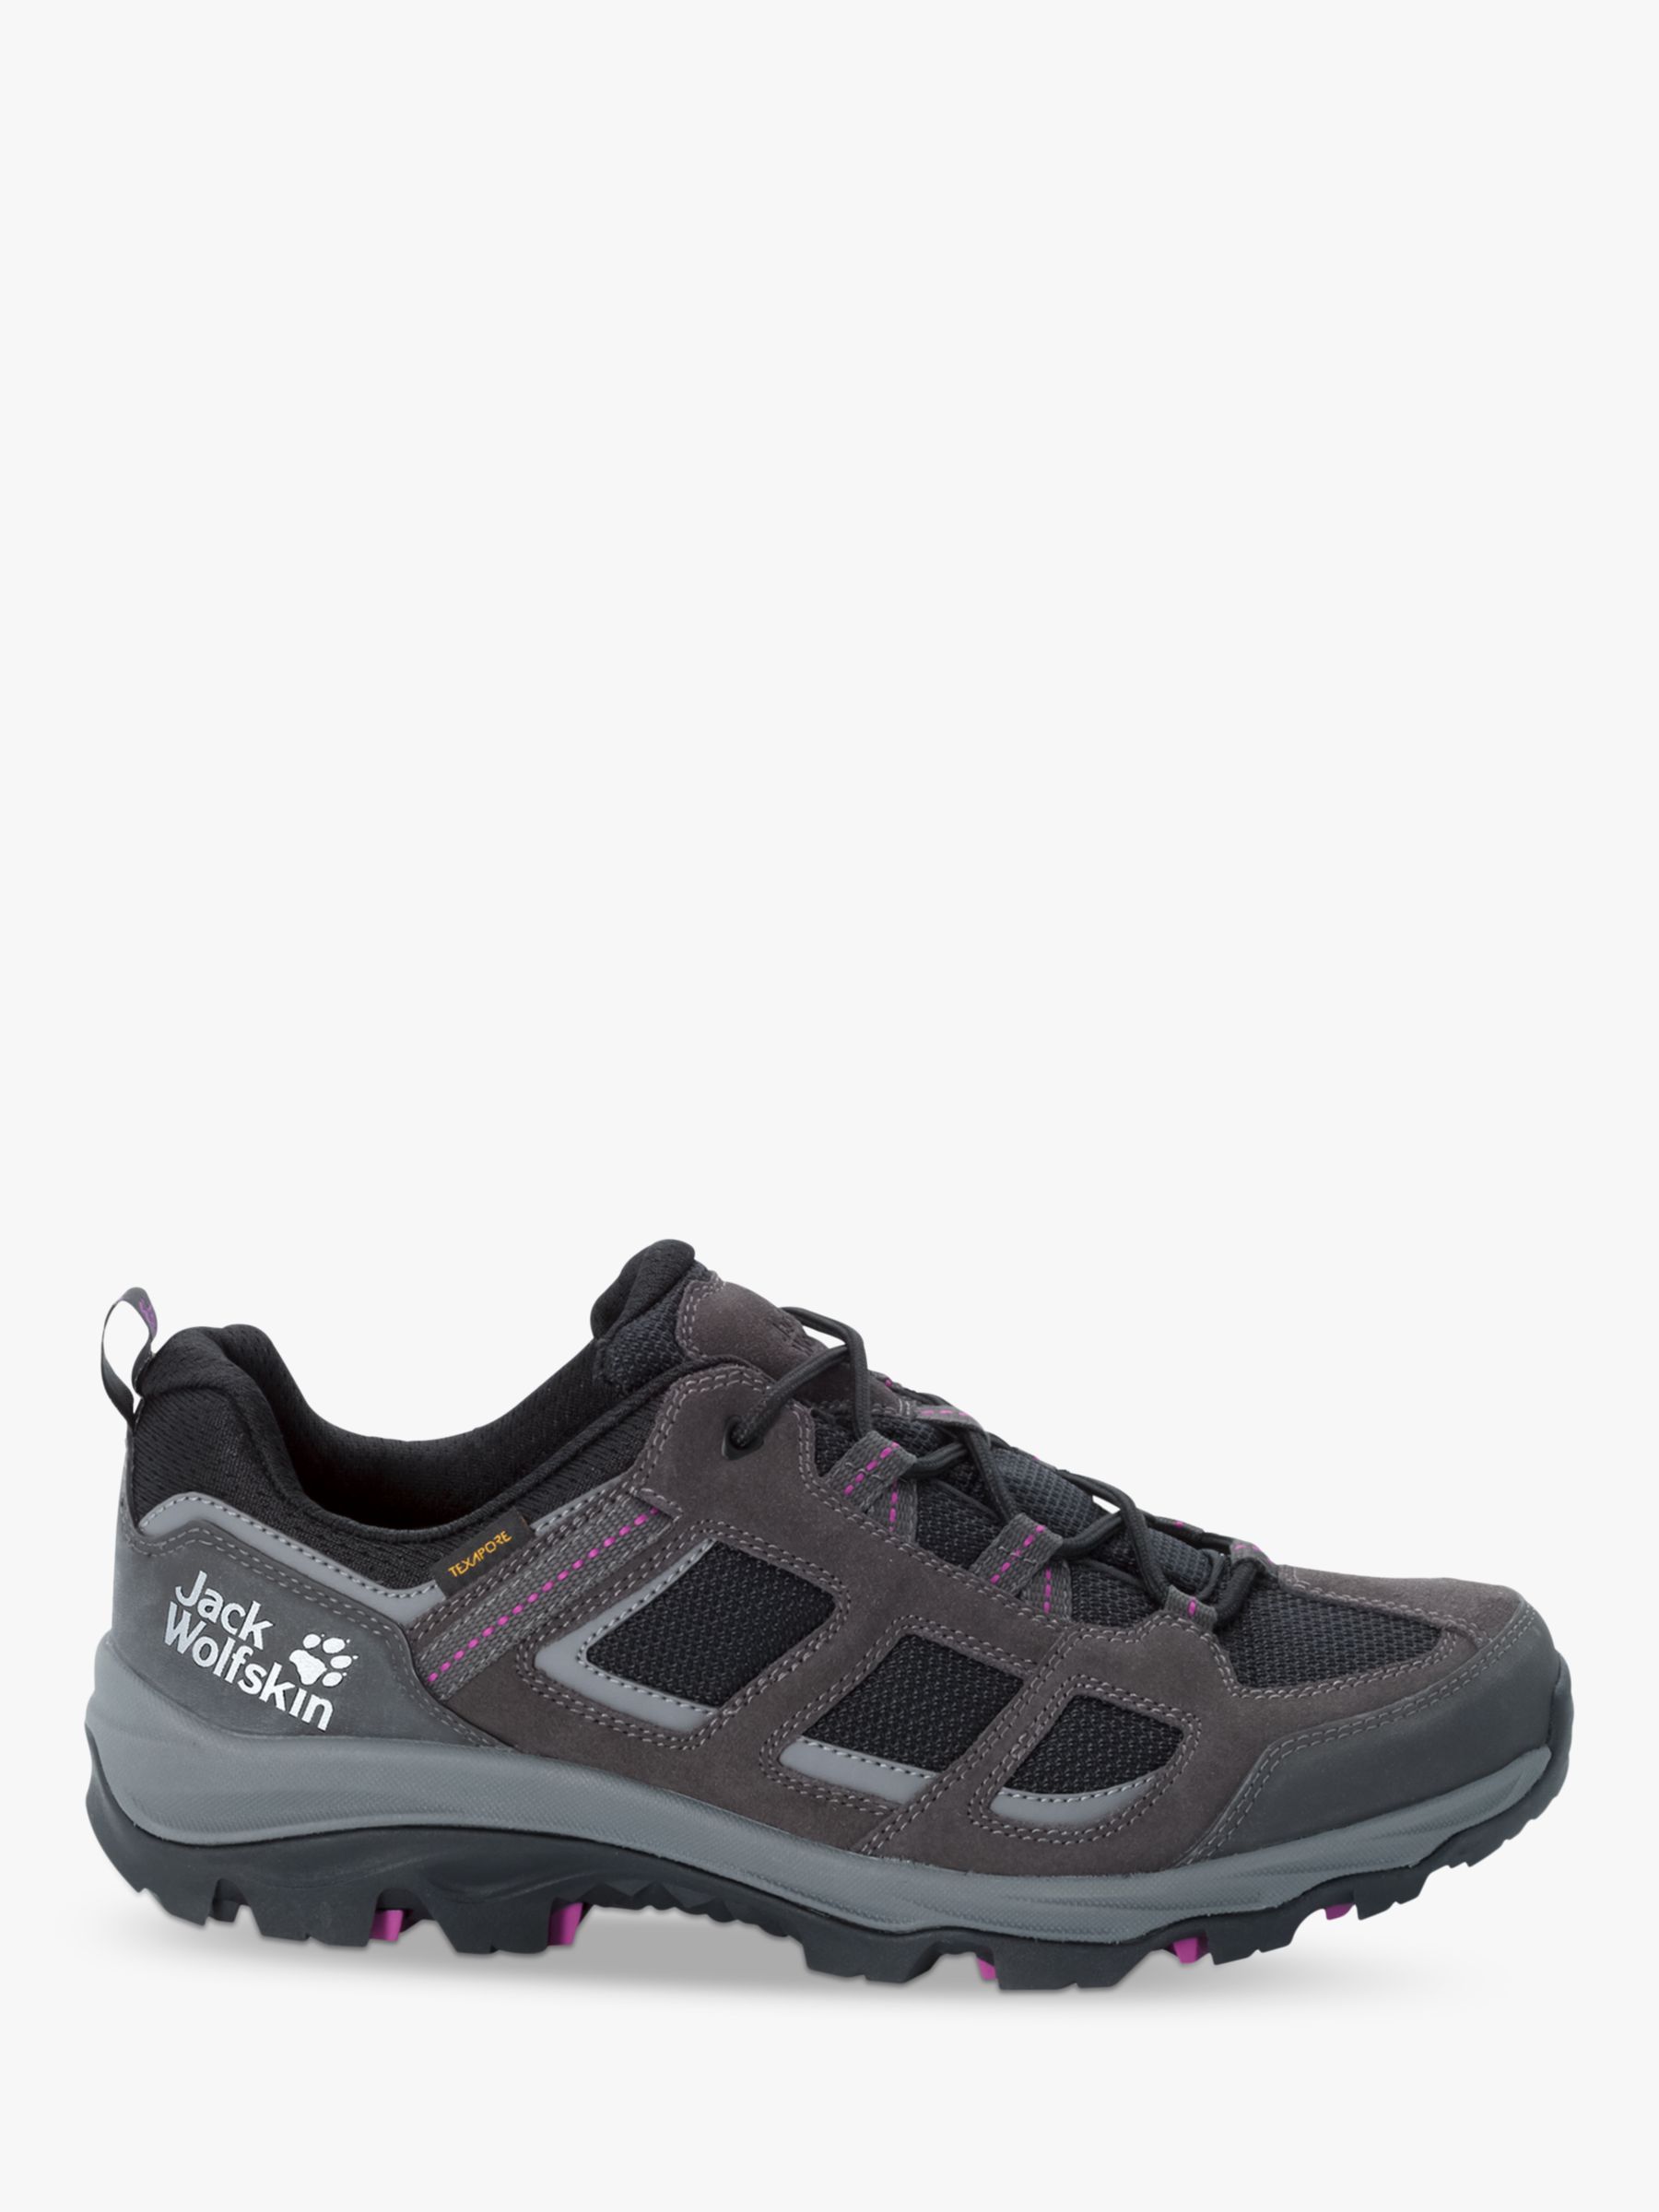 Jack Wolfskin Vojo 3 Texapore Women's Waterproof Walking Shoes, Dark Steel/Purple, 4